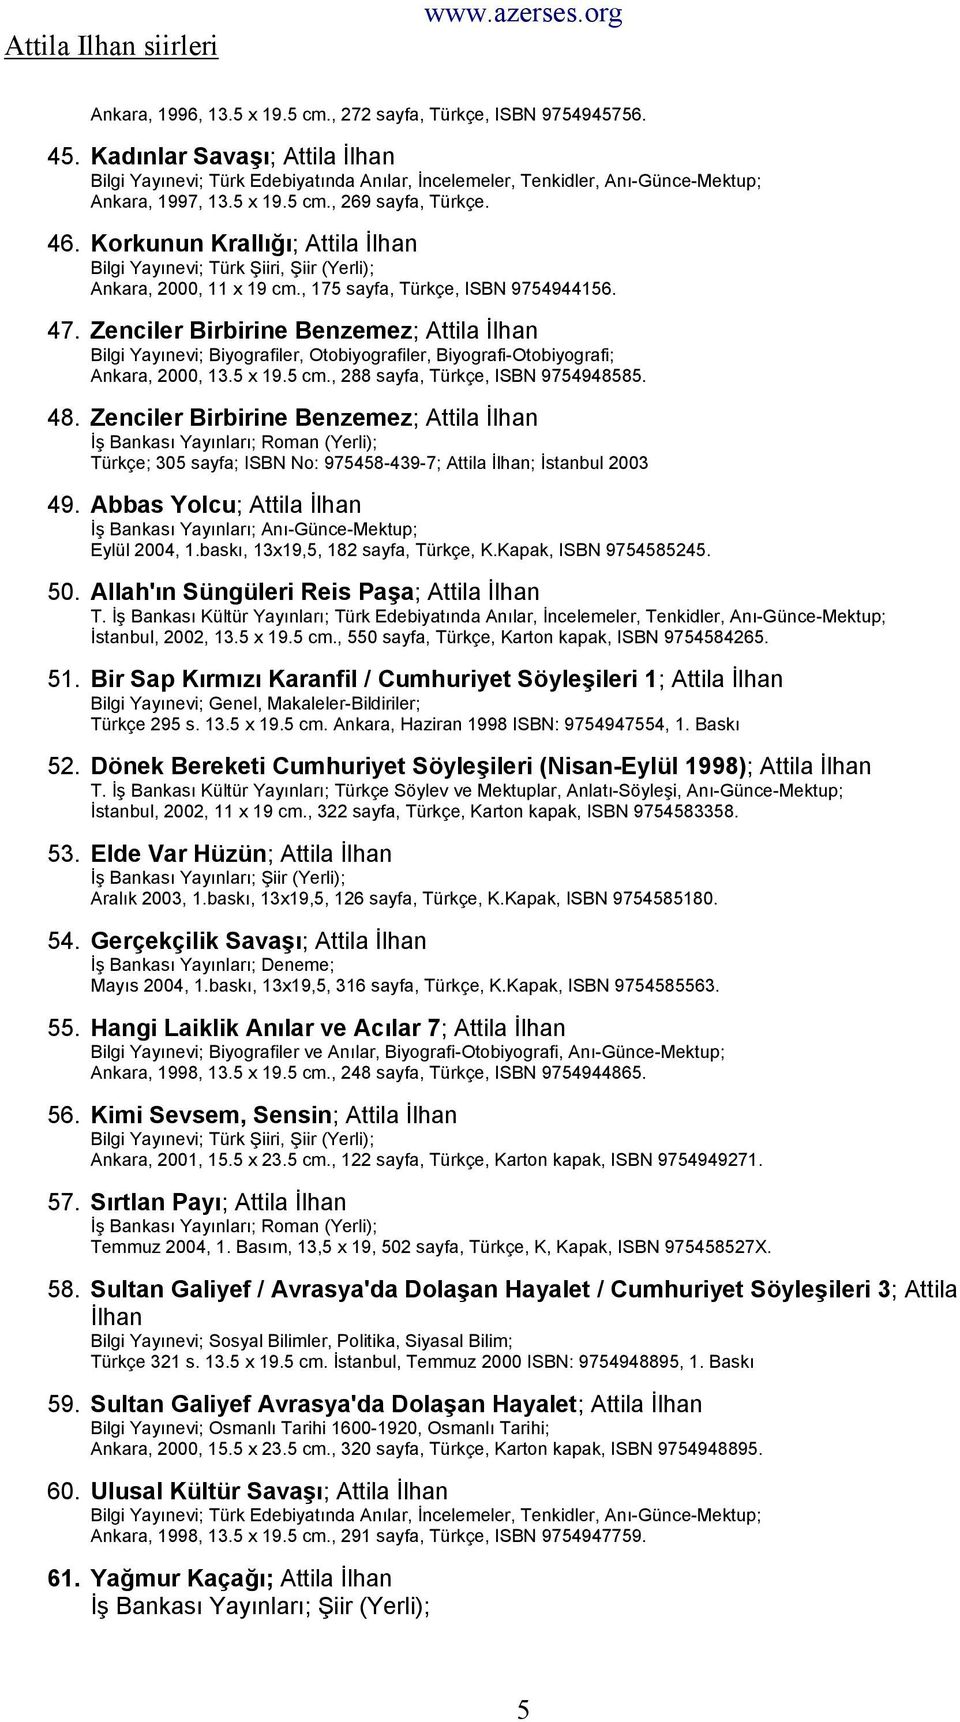 Zenciler Birbirine Benzemez; Bilgi Yayınevi; Biyografiler, Otobiyografiler, Biyografi-Otobiyografi; Ankara, 2000, 13.5 x 19.5 cm., 288 sayfa, Türkçe, ISBN 9754948585. 48.